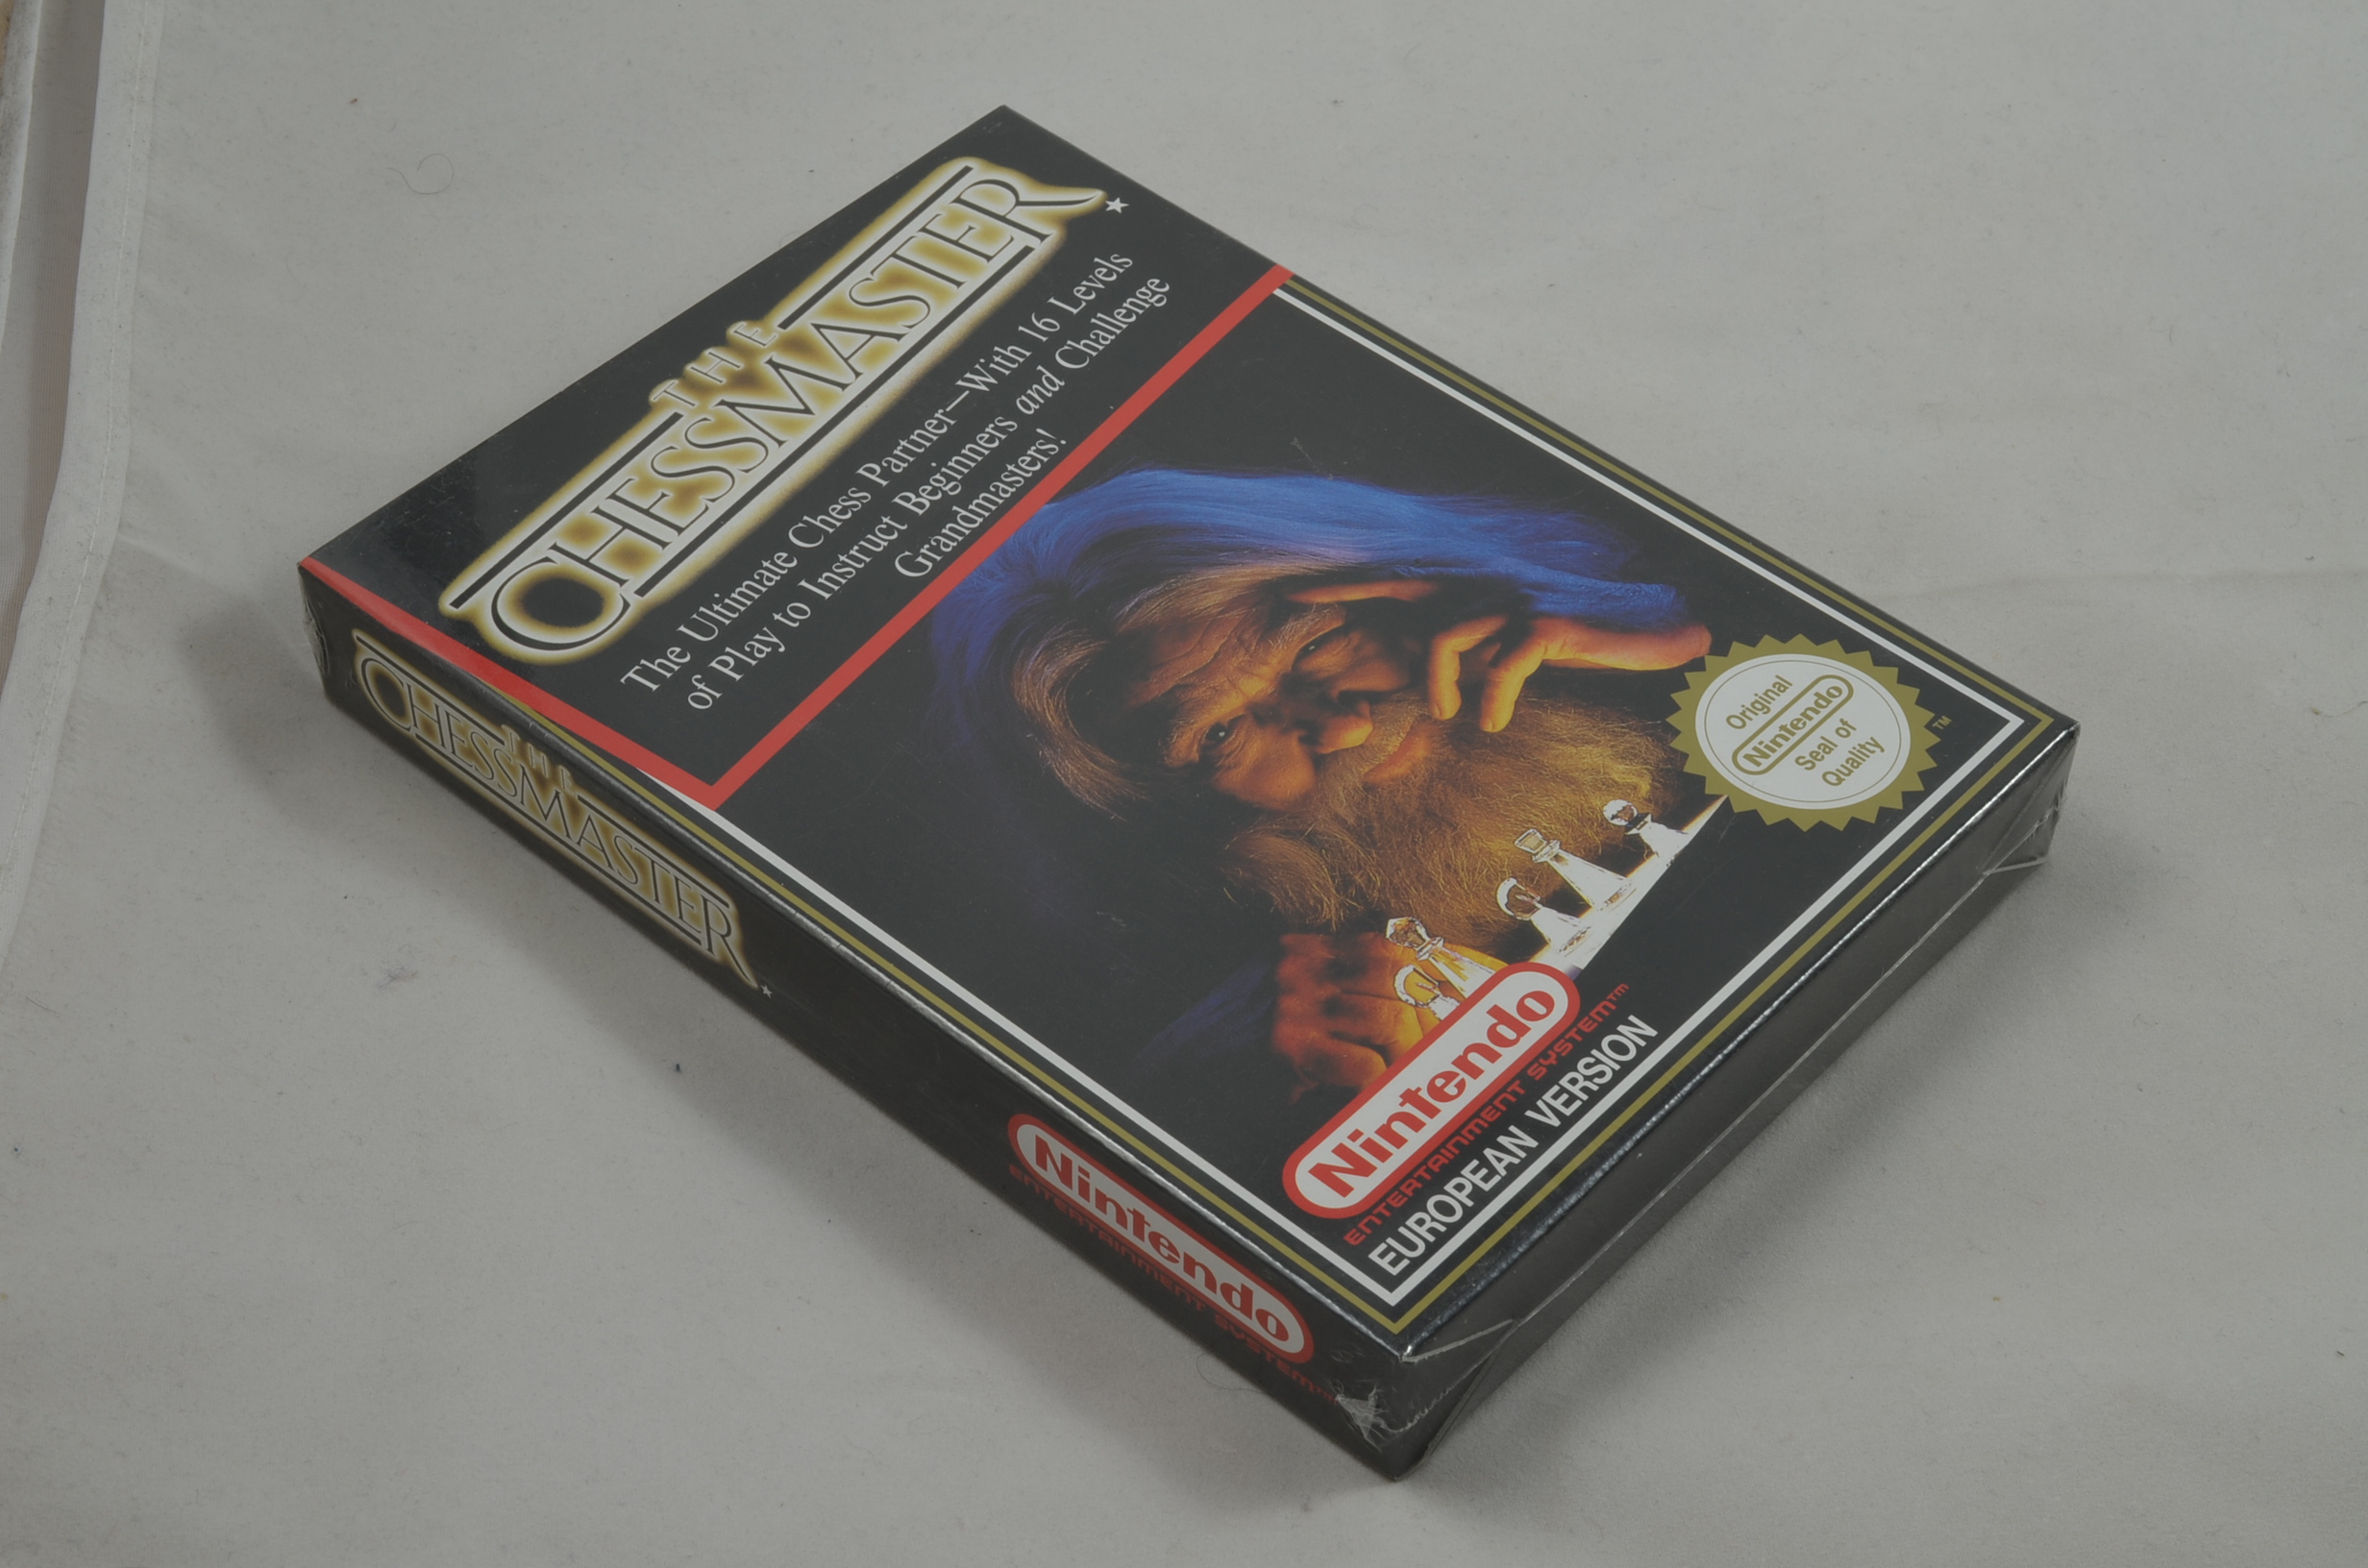 Produktbild von The Chessmaster NES Spiel CIB (sealed)